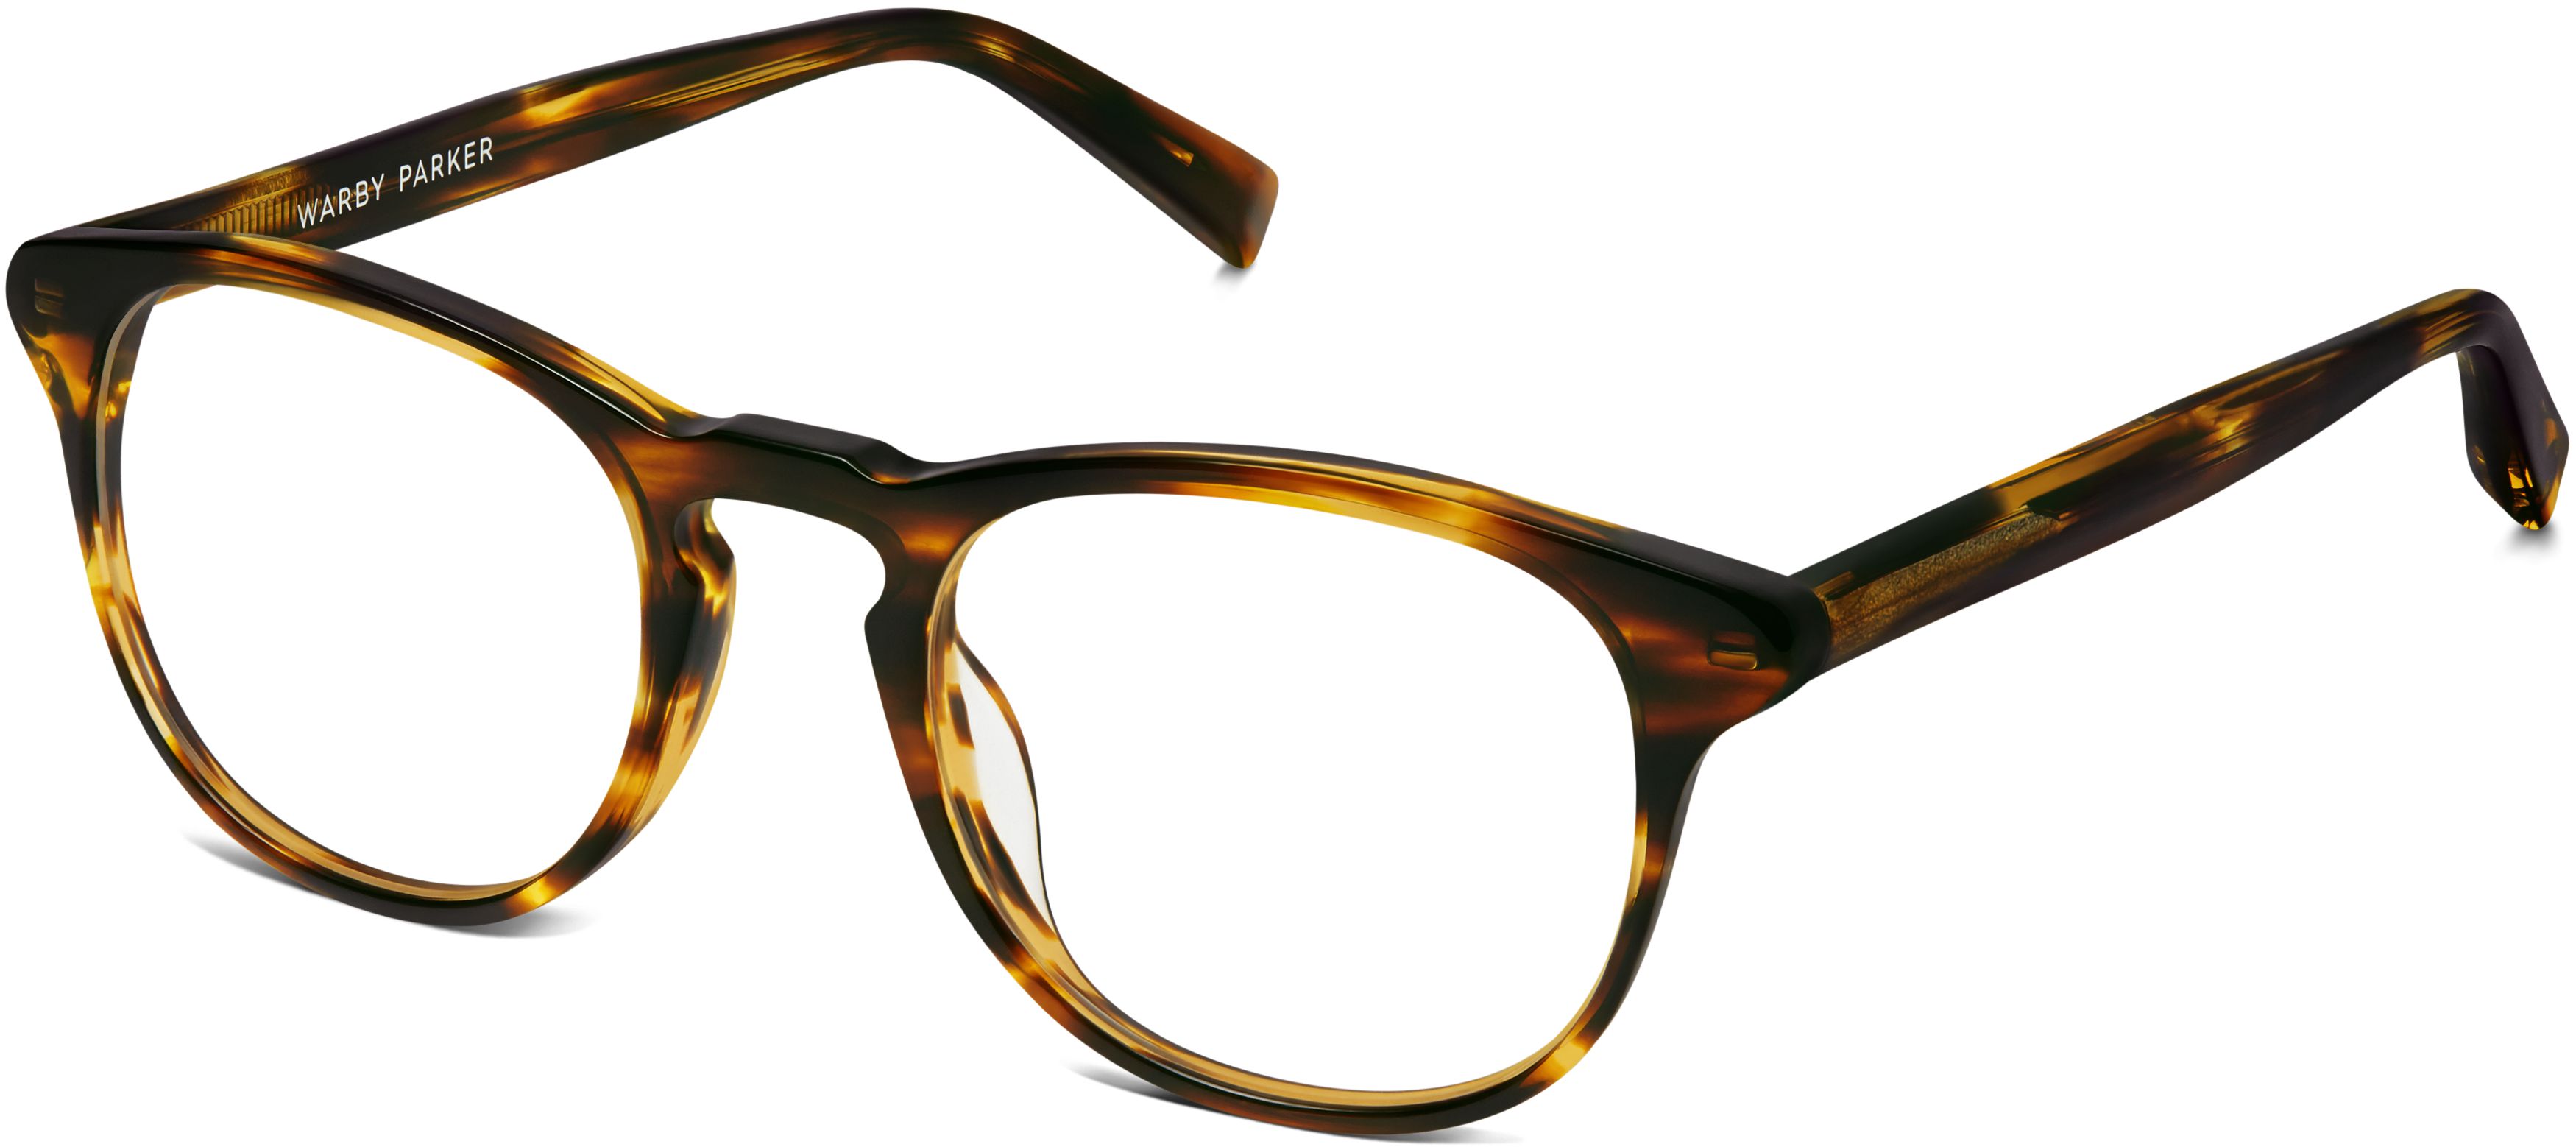 women-baker-eyeglasses-striped-sassafras-angle-2992-84a004ea.jpg